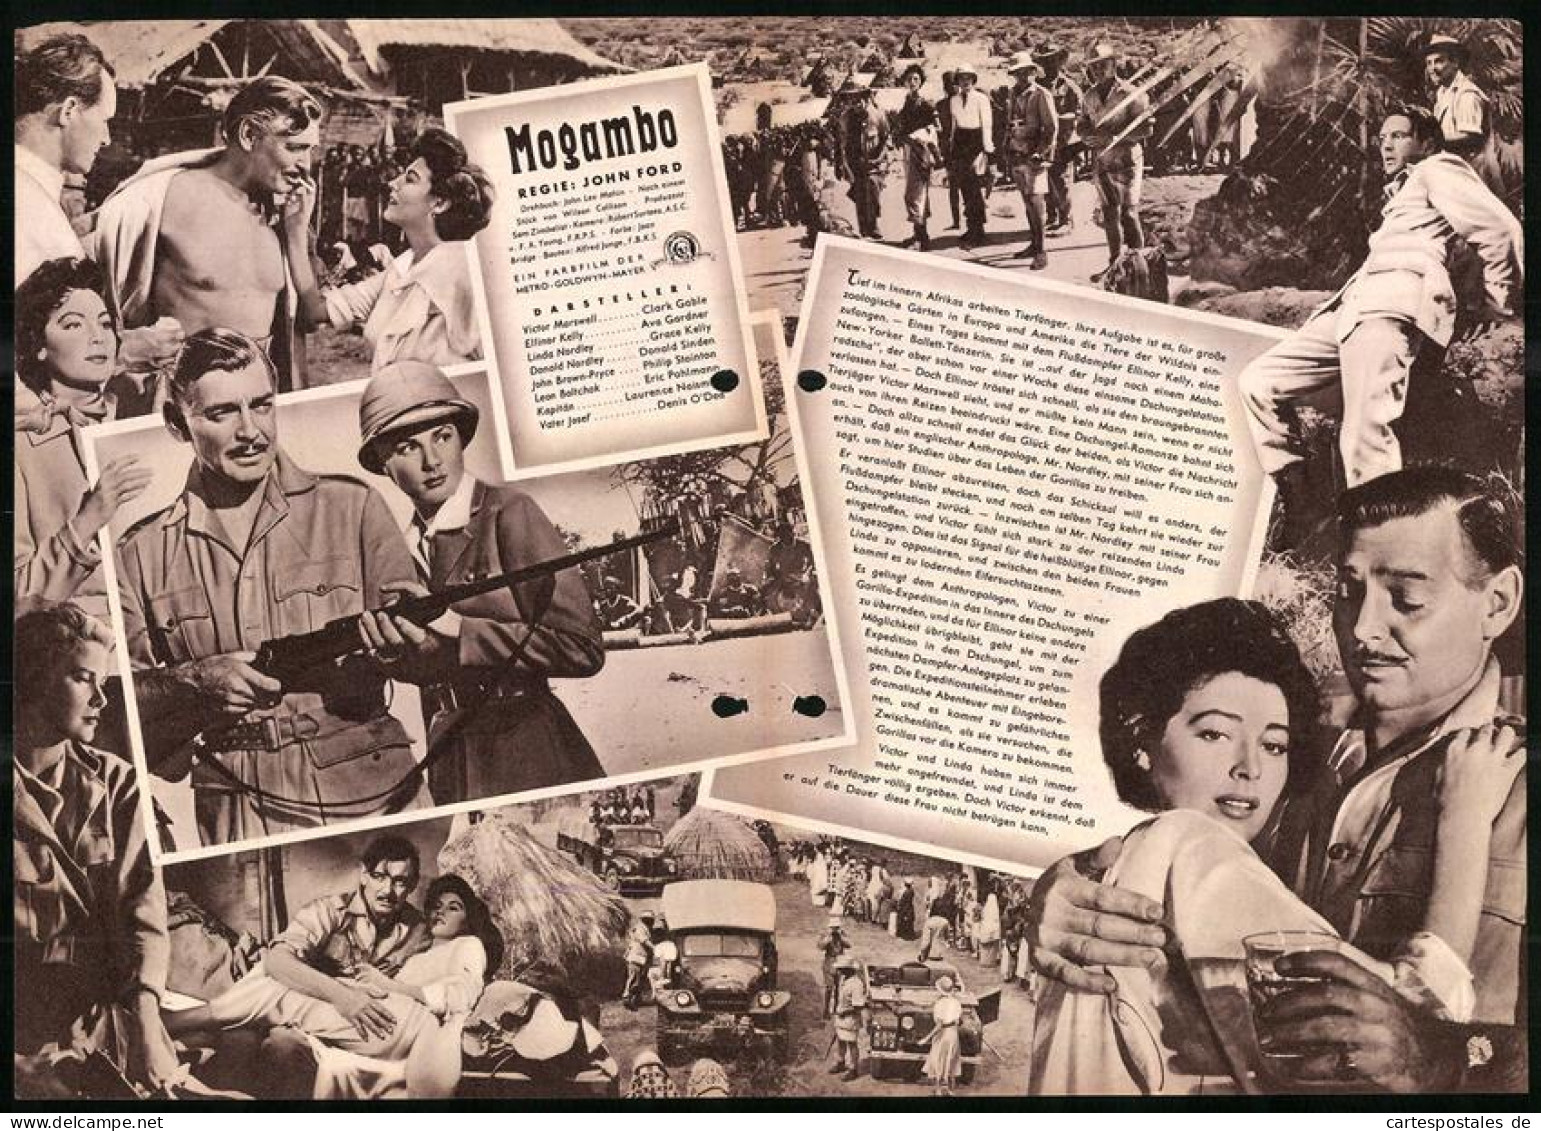 Filmprogramm IFB Nr. 2466, Mogambo, Clark Gable, Ava Gardner, Grace Kelly, Regie: John Ford  - Zeitschriften